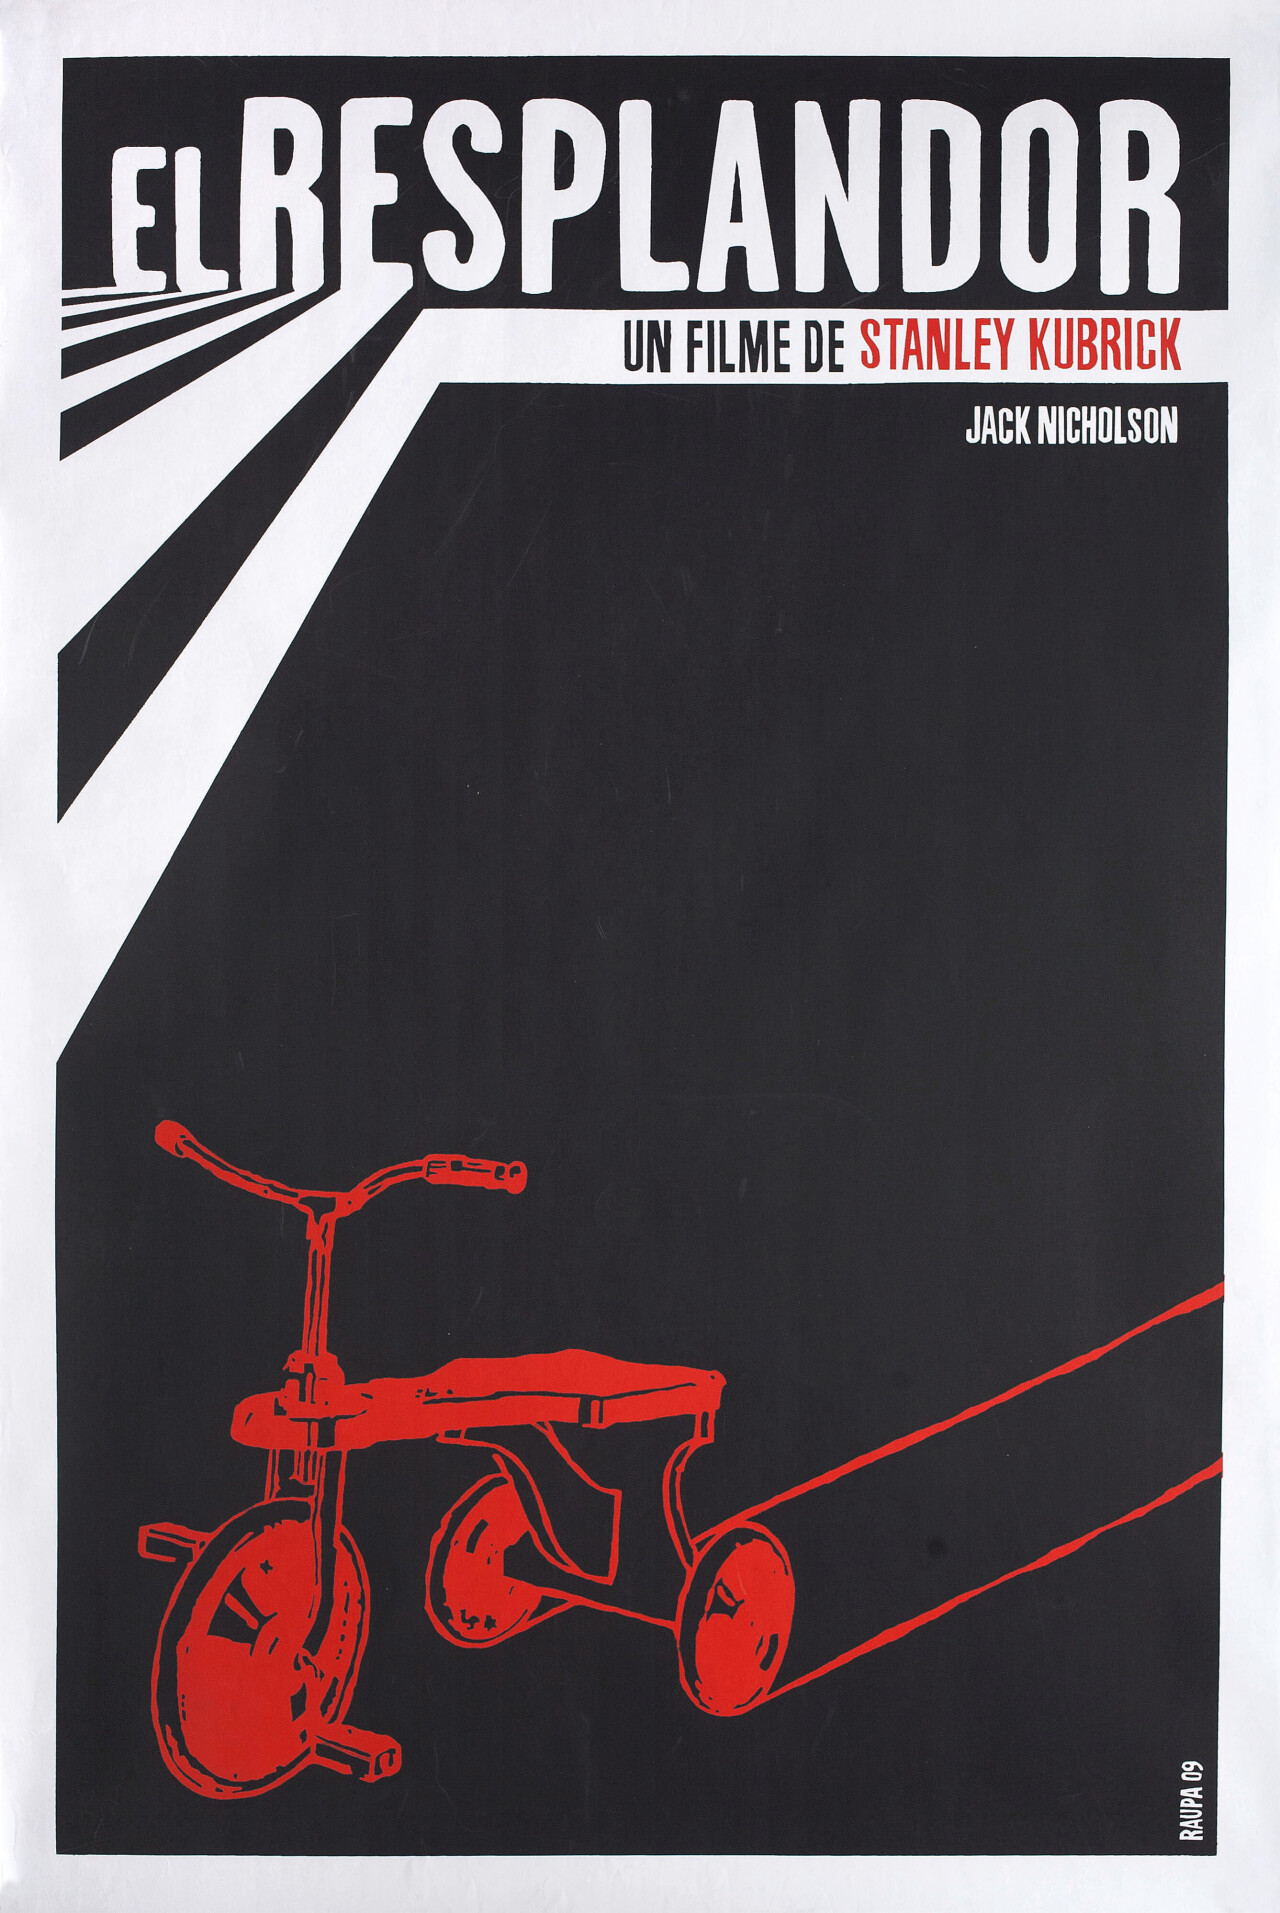 Сияние (The Shining, 1980), режиссёр Стэнли Кубрик, кубинский постер к фильму, автор Раупа (ужасы, 2009 год)